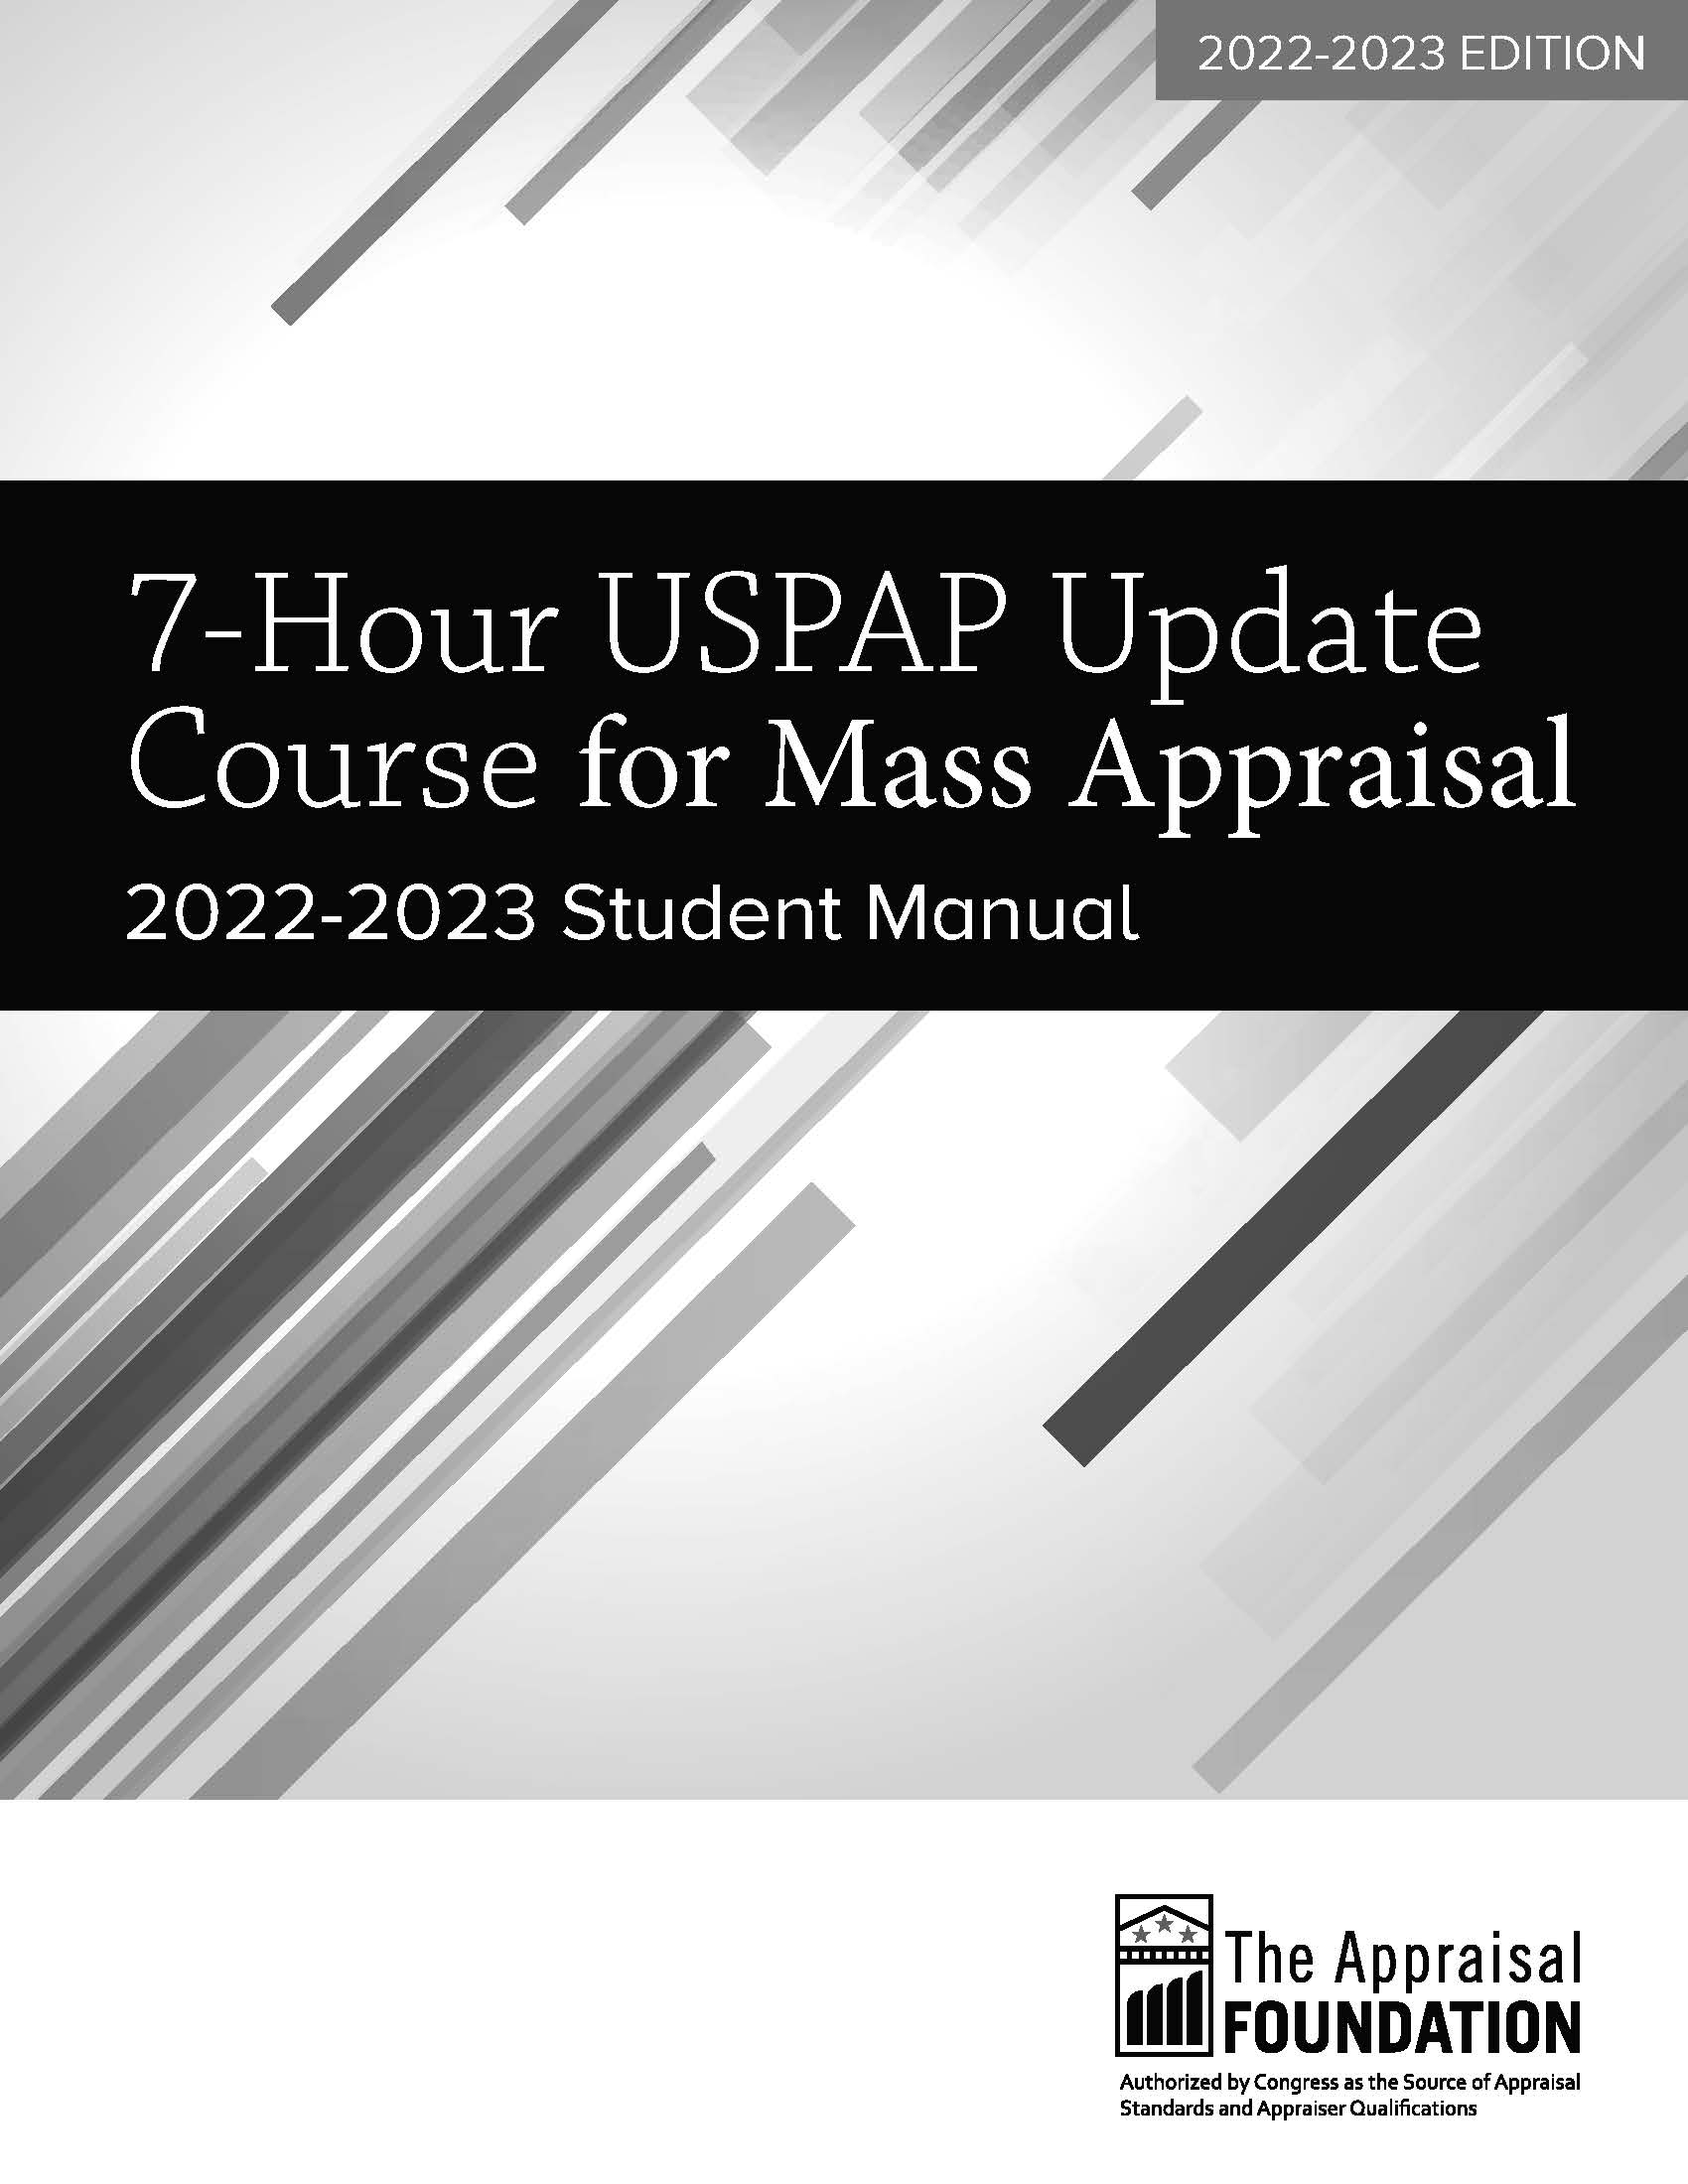 NEW 7-Hour USPAP MASS APPRAISAL Update Course